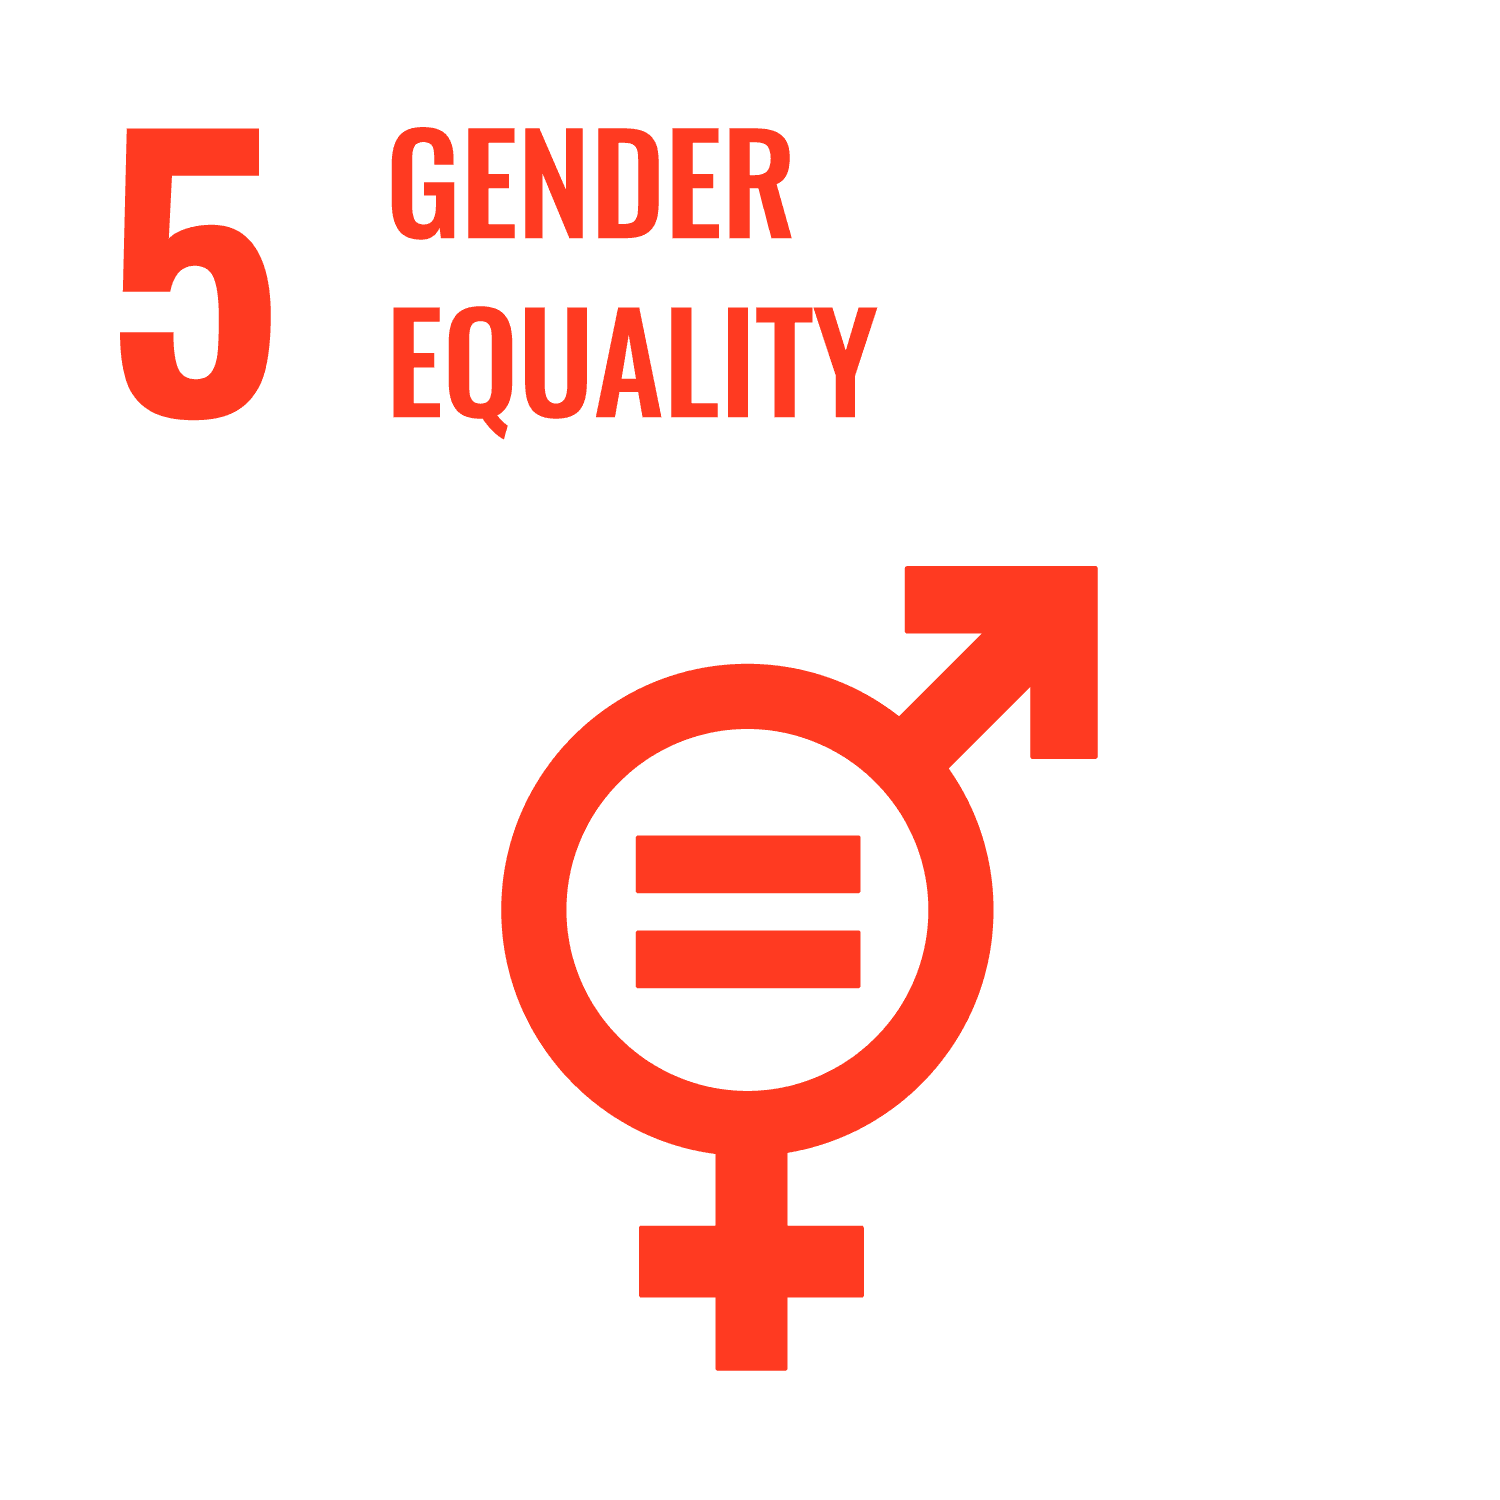 Goal 5, Gender equality